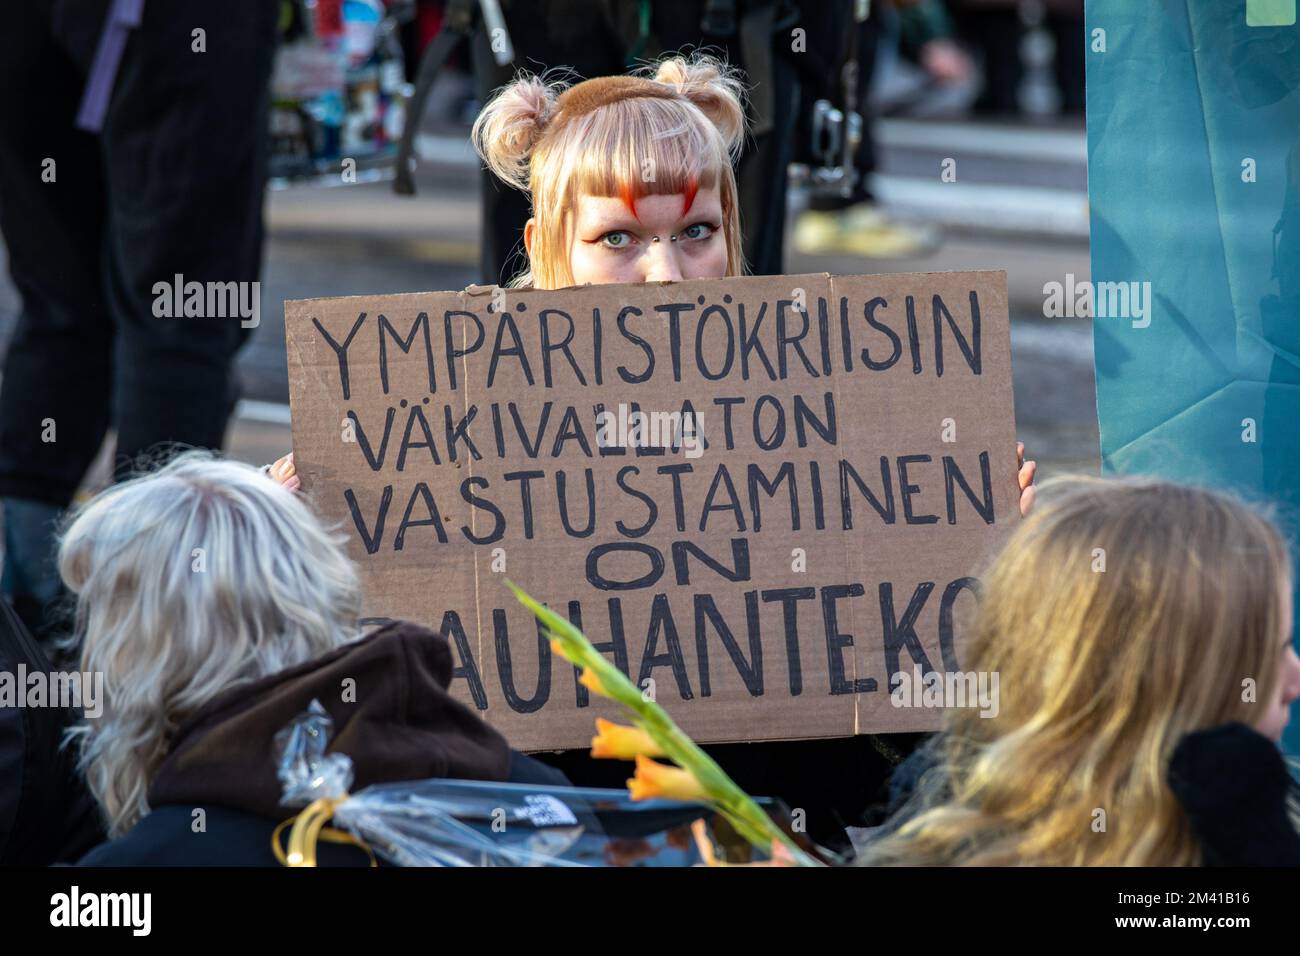 Luontokatokapina. Une jeune femme porte un panneau à la manifestation de blocage de la circulation d'Elokapina sur Mannerheimintie à Helsinki, en Finlande. Banque D'Images